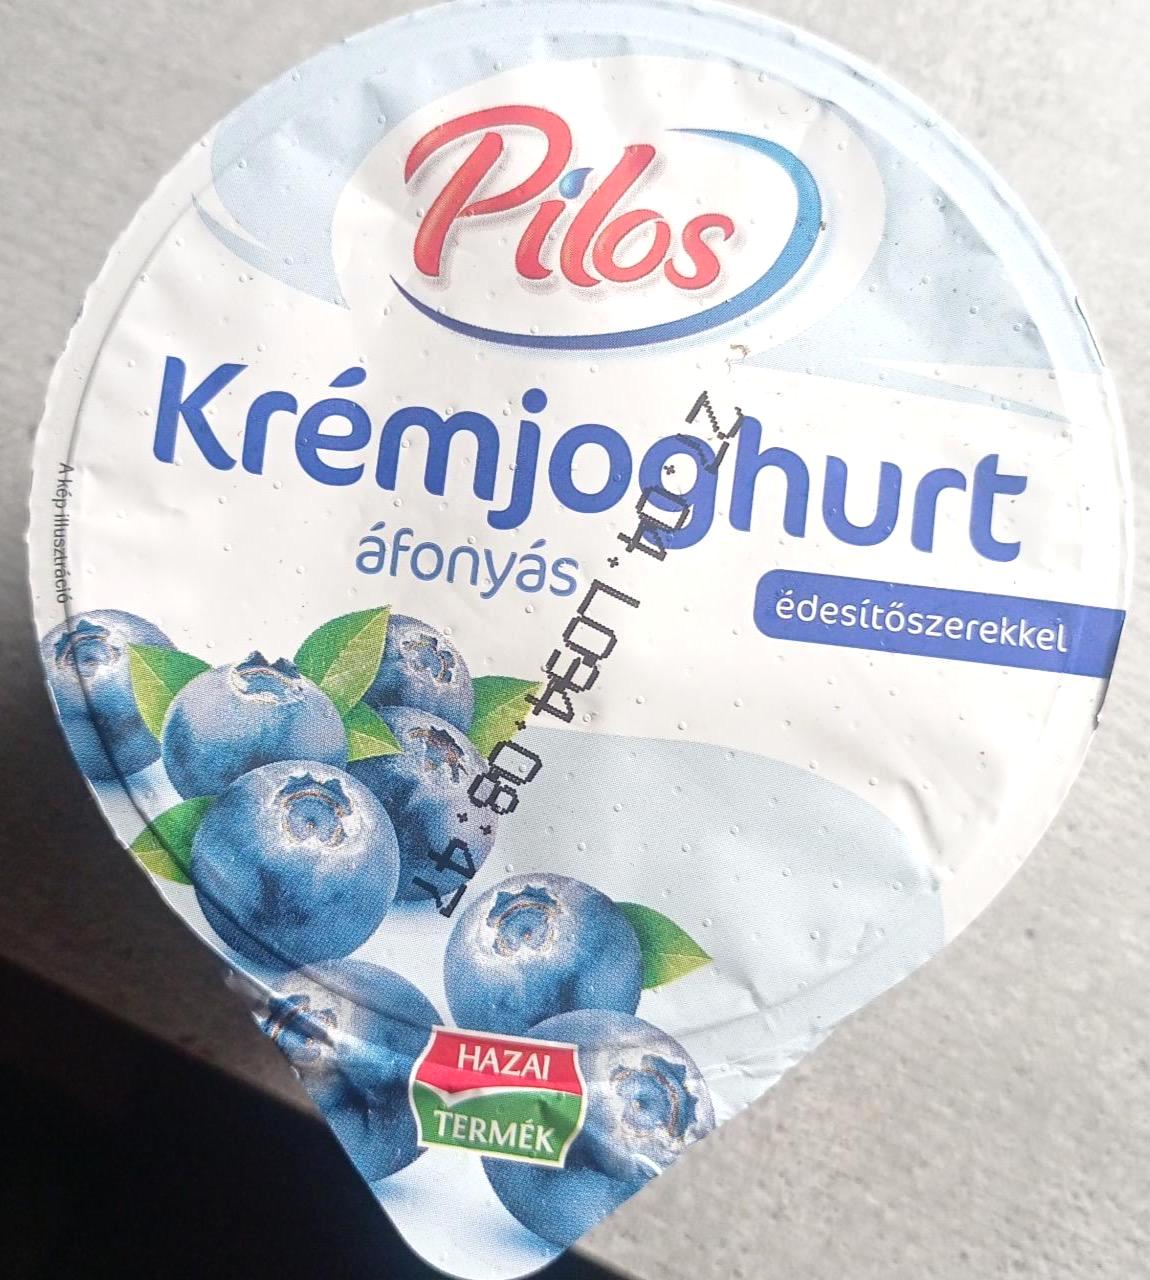 Képek - Krémjohurt áfonyas édesítőszerekkel Pilos